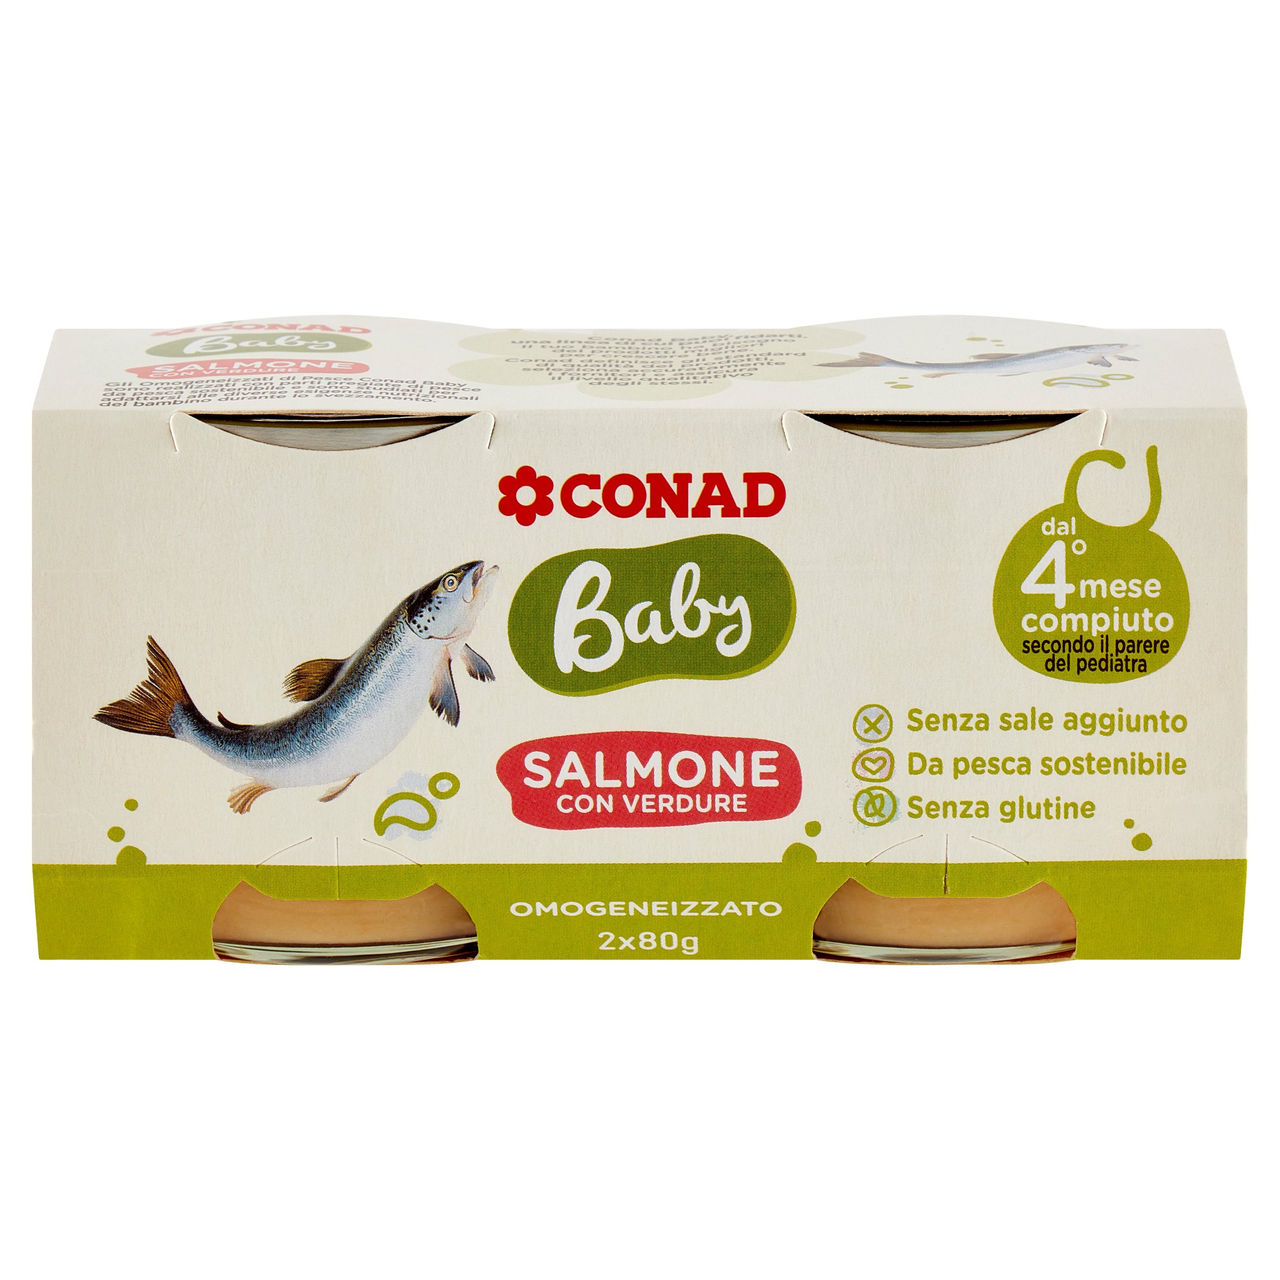 Omogeneizzato salmone Baby Conad in vendita online